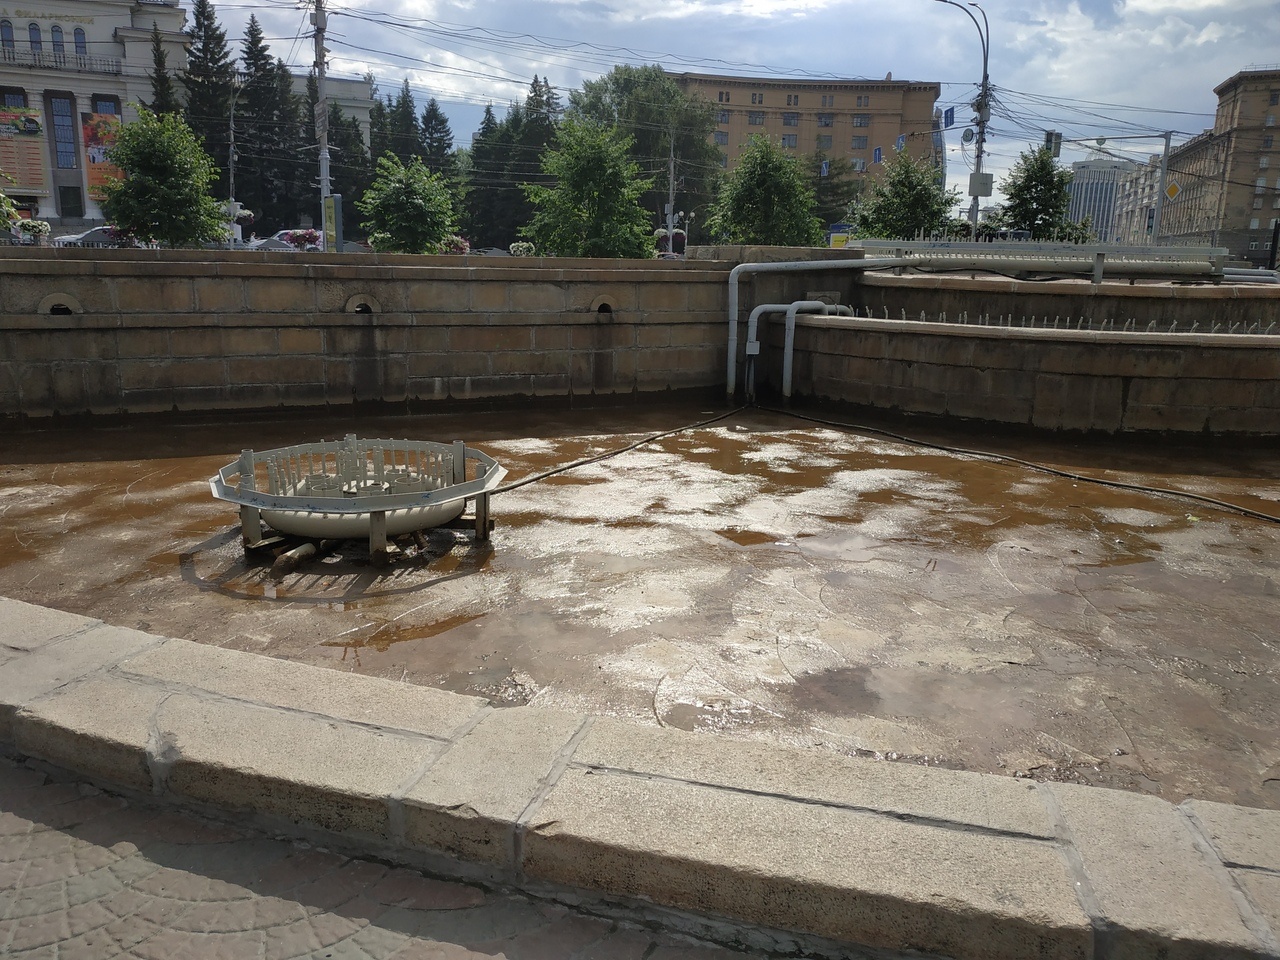 Фото: из фонтана в Первомайском сквере слили воду в День Ивана Купалы